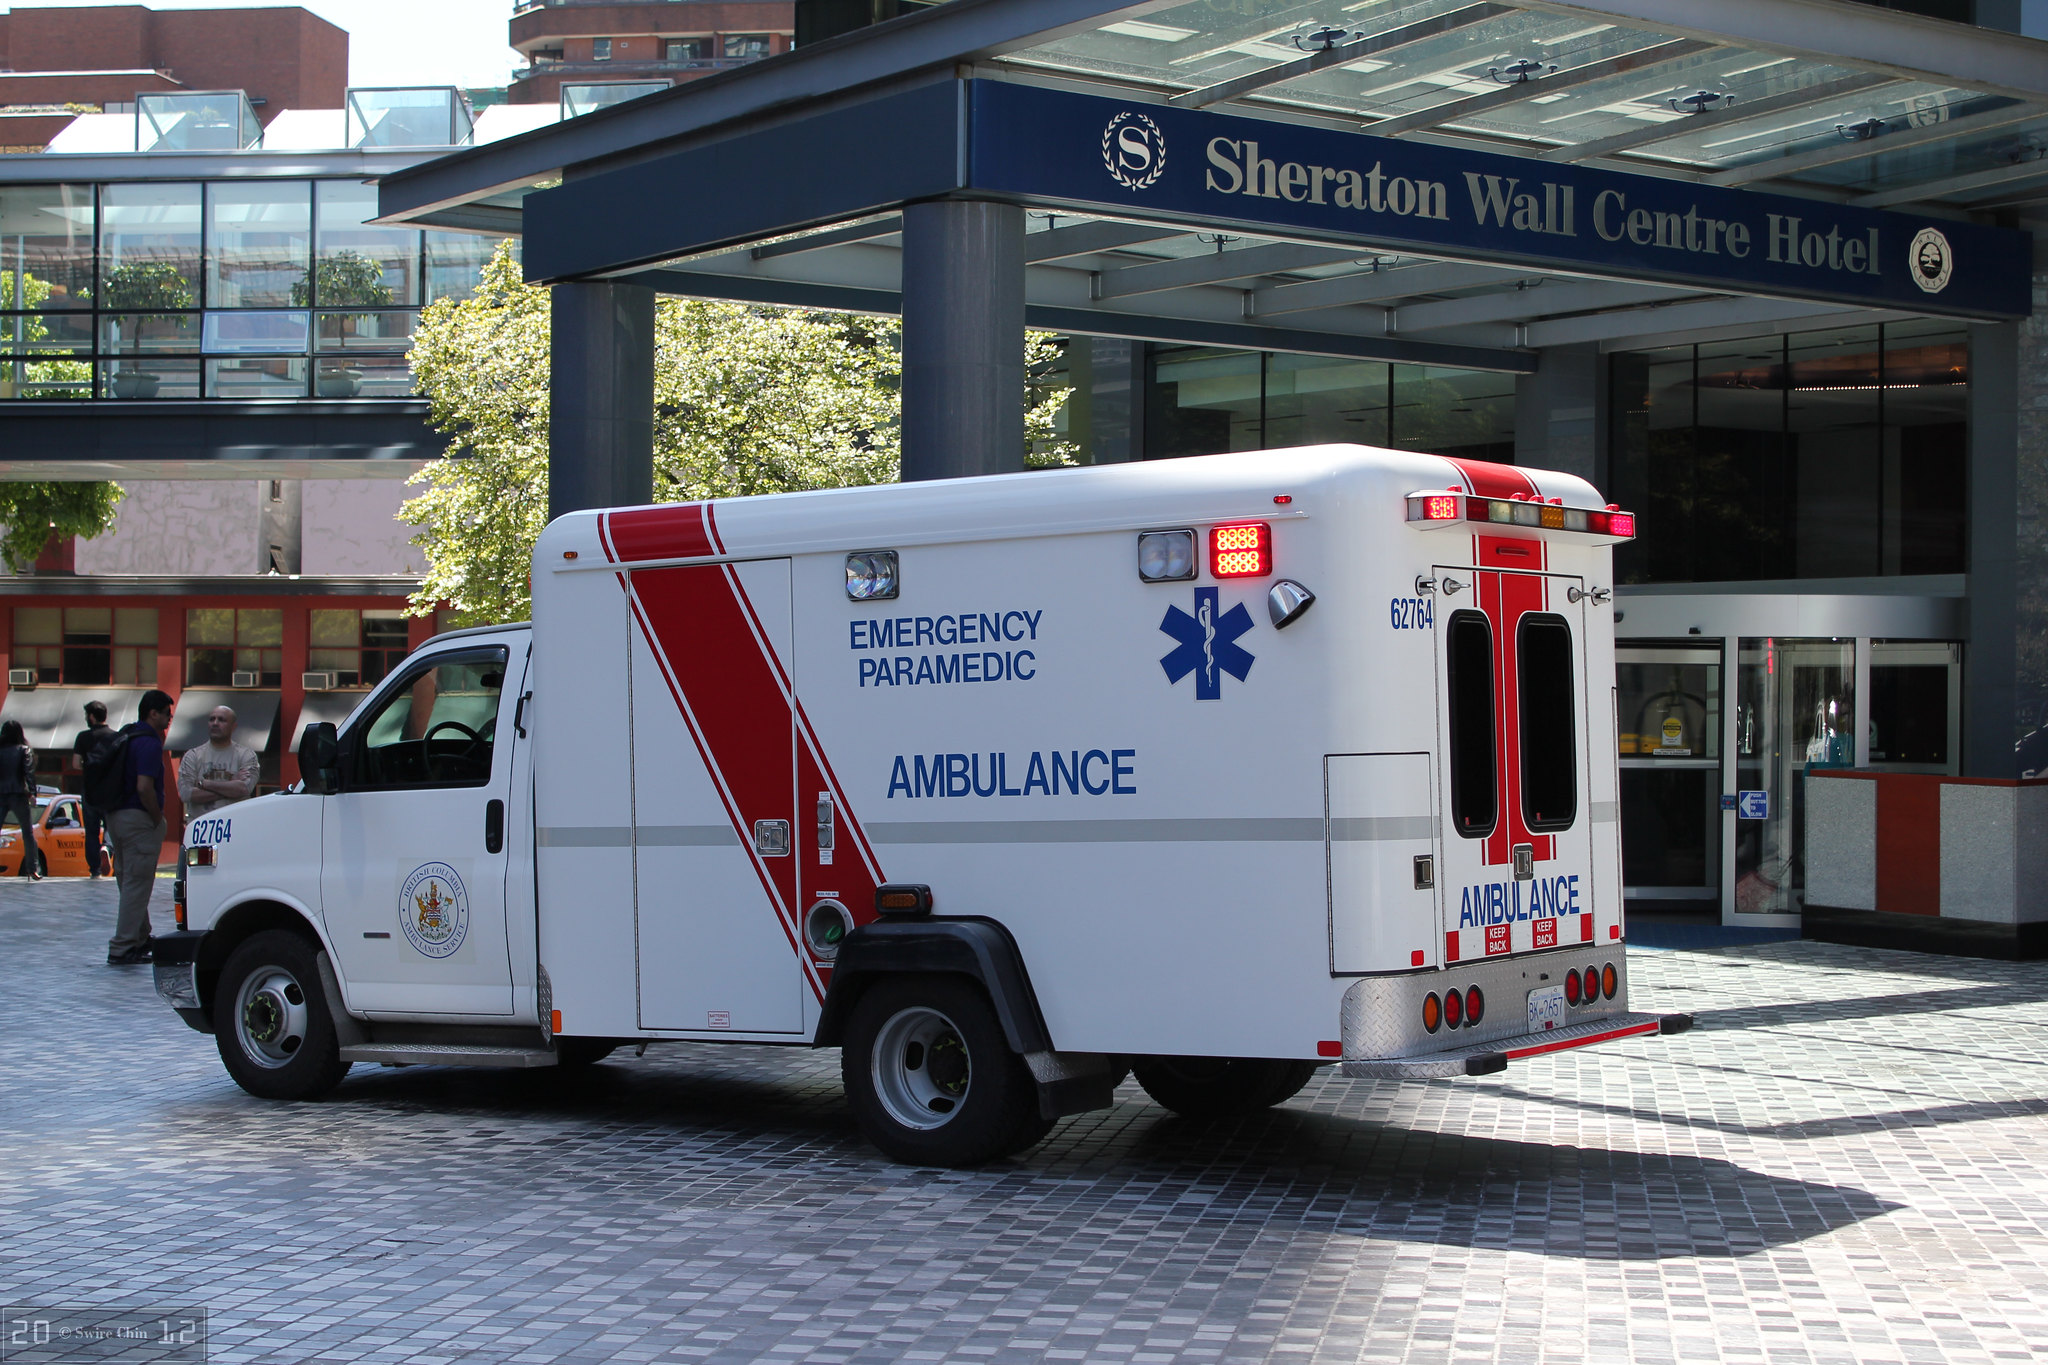 Una ambulancia estacionada afuera de la entrada techada del hotel.